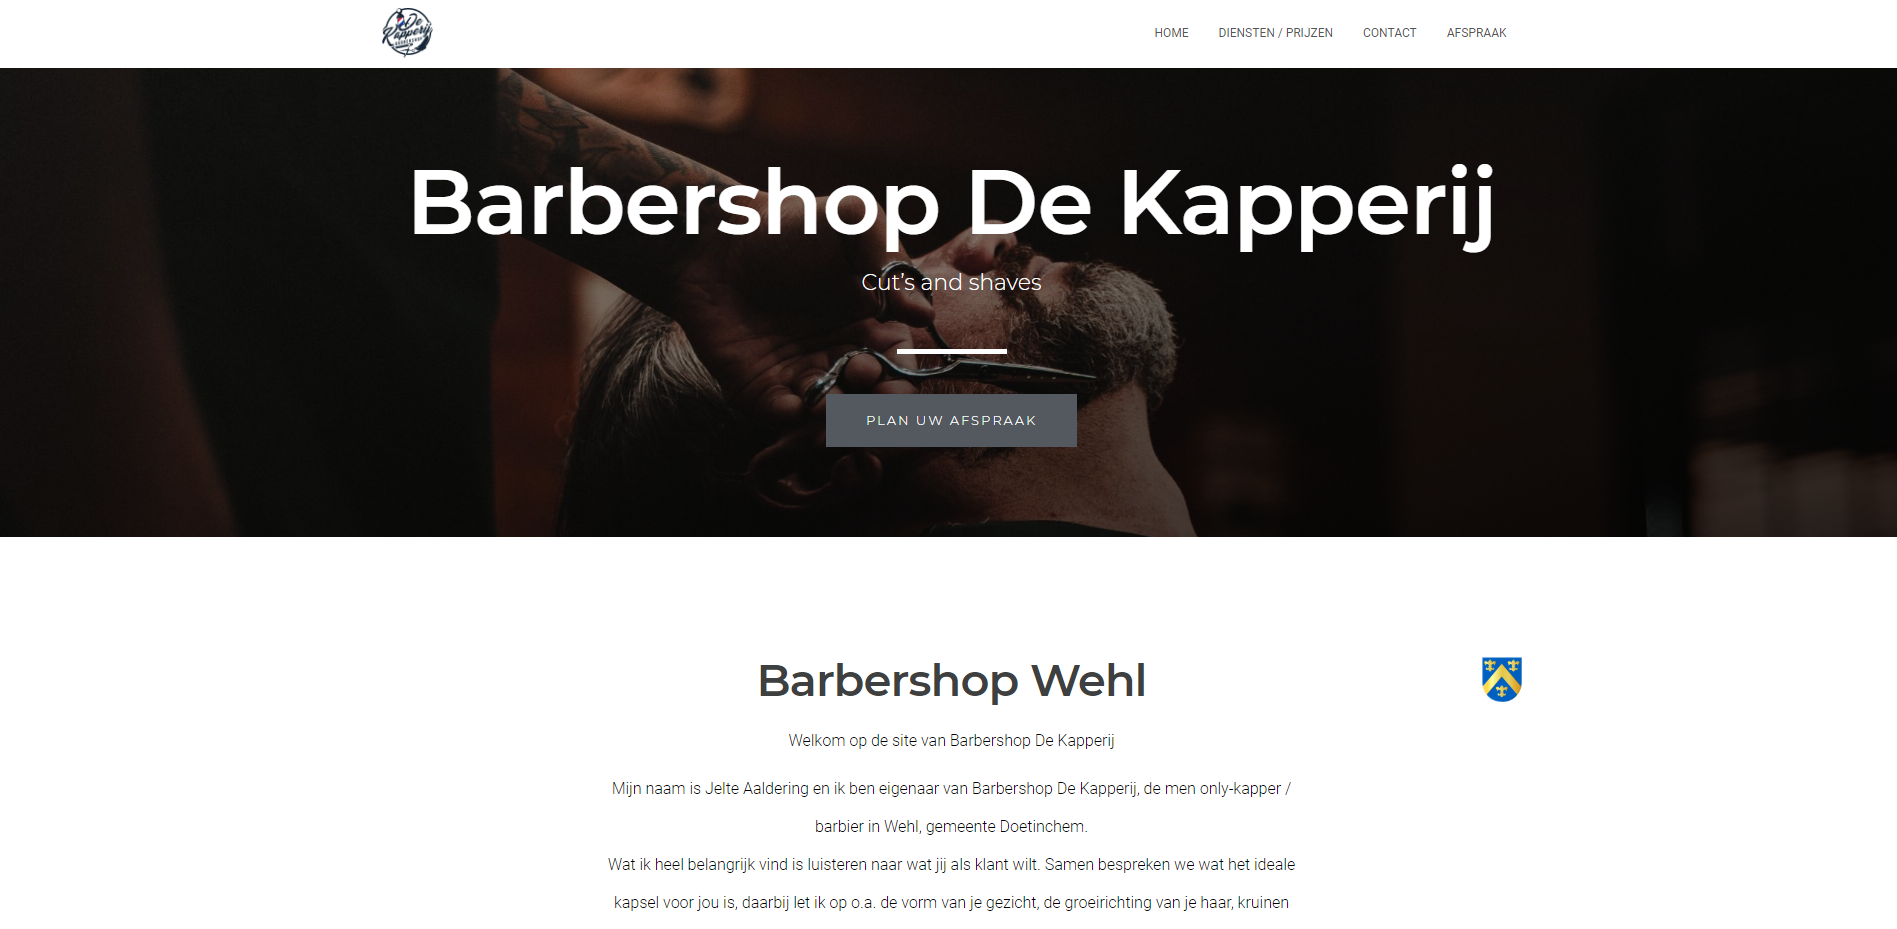 Barbershop De Kapperij